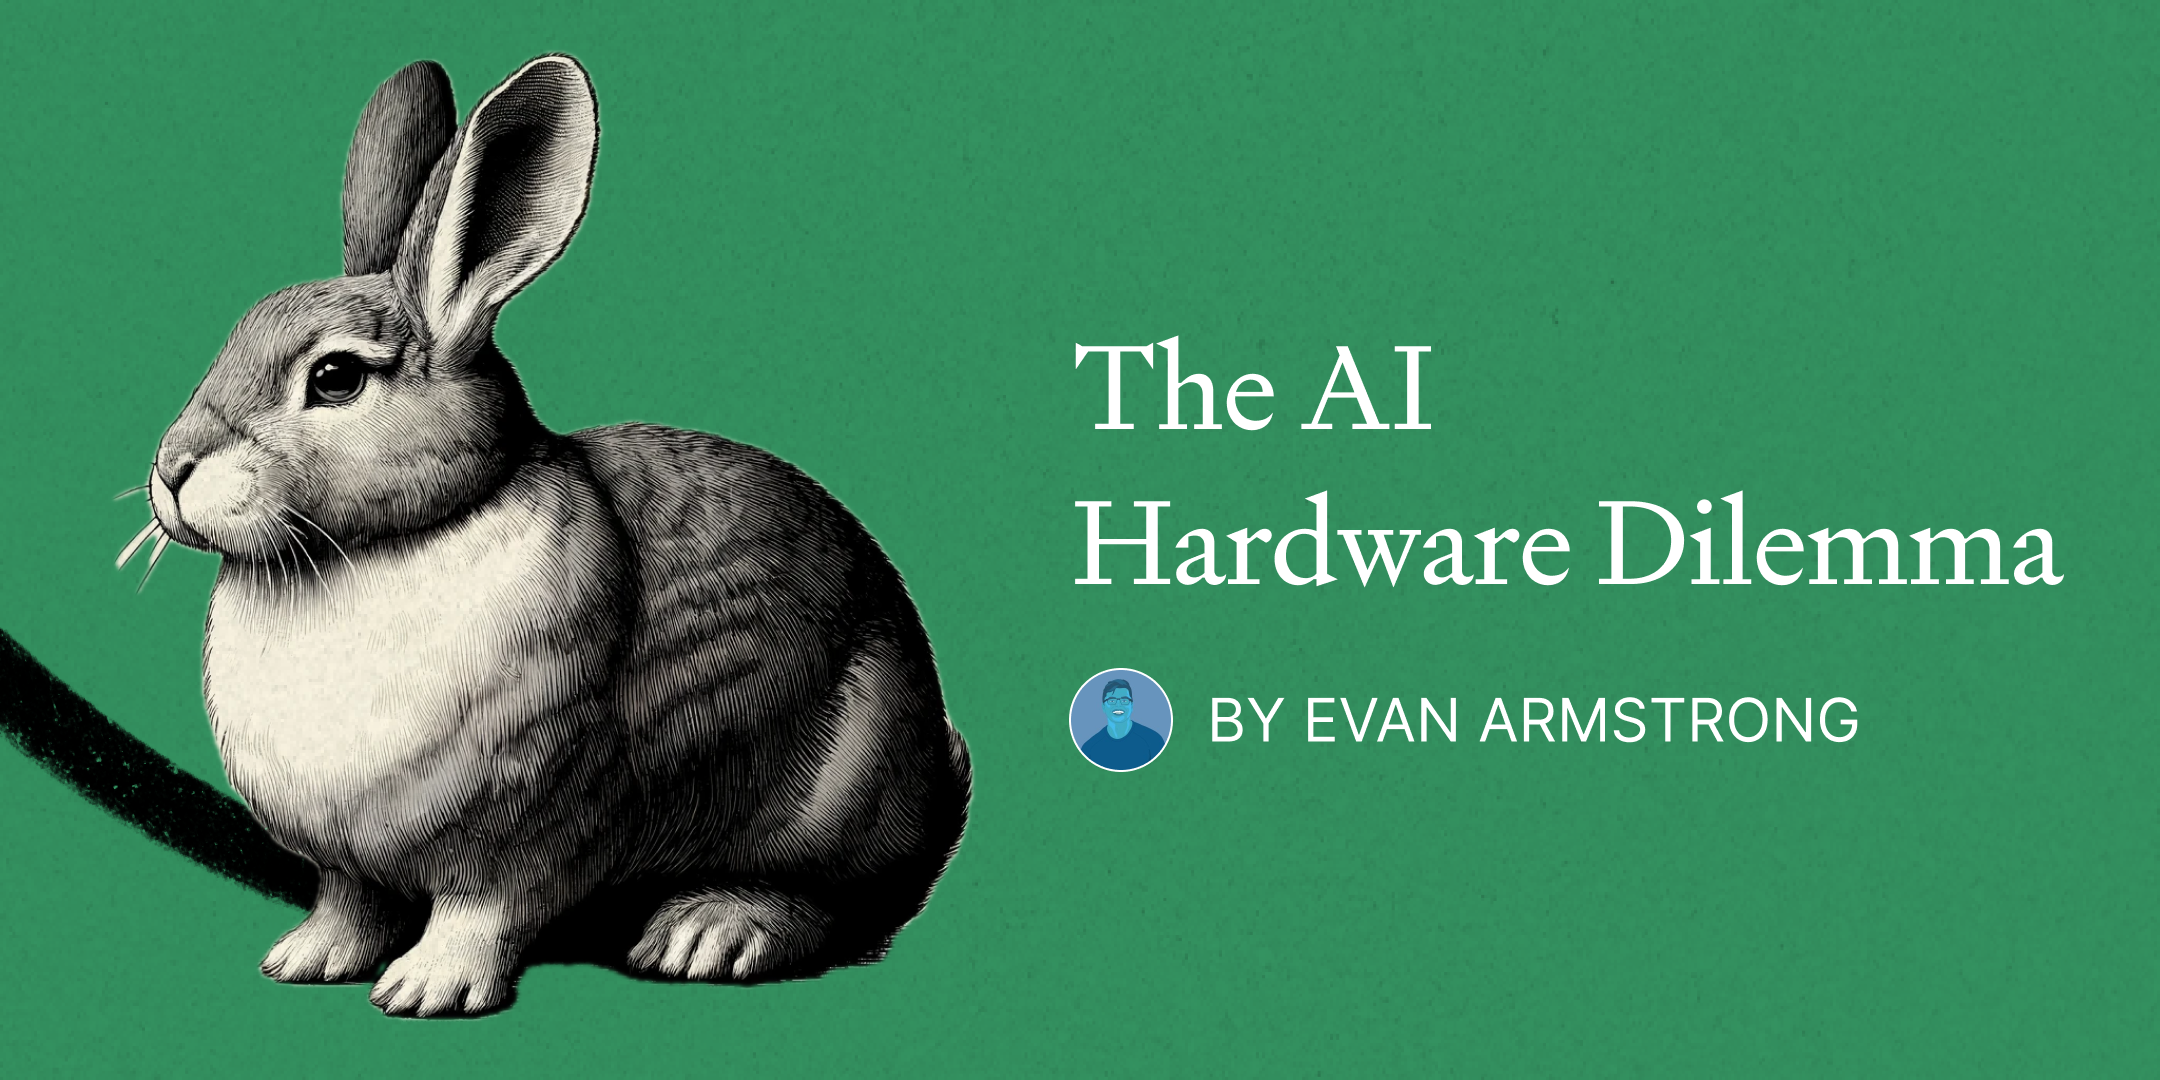 The AI Hardware Dilemma (6 minute read)